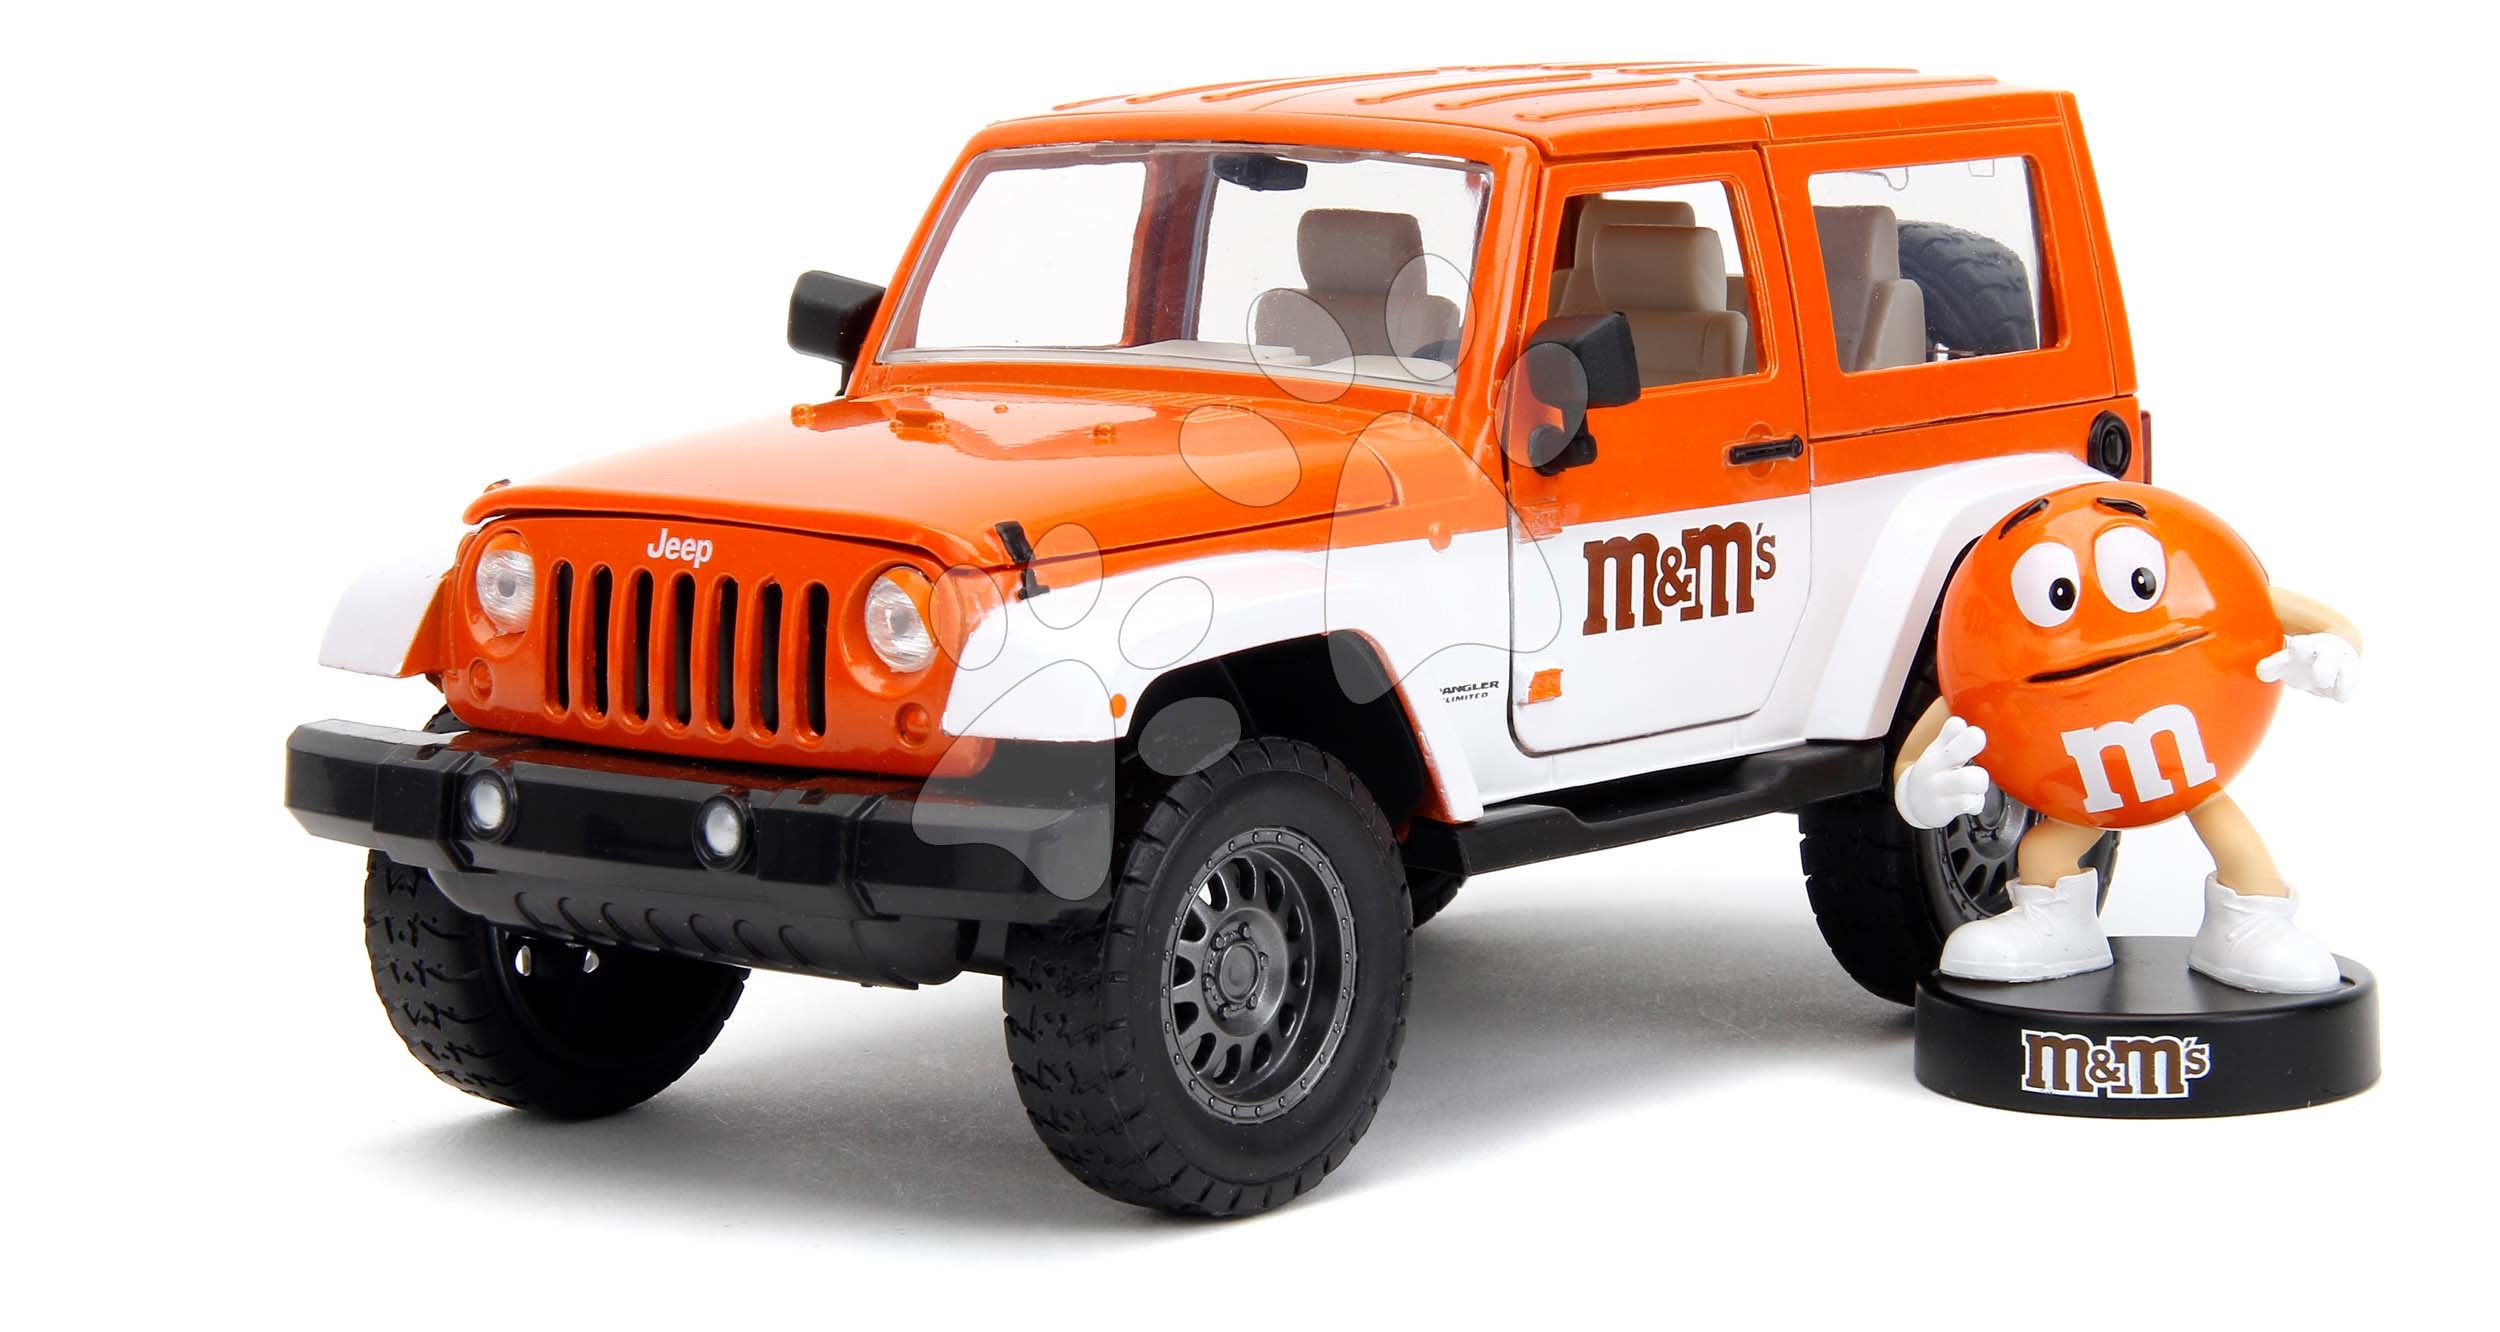 Autíčko Jeep Wrangler 2007 M&M Jada kovové s otevíratelnými dveřmi a figurka Orange délka 18 cm 1:24